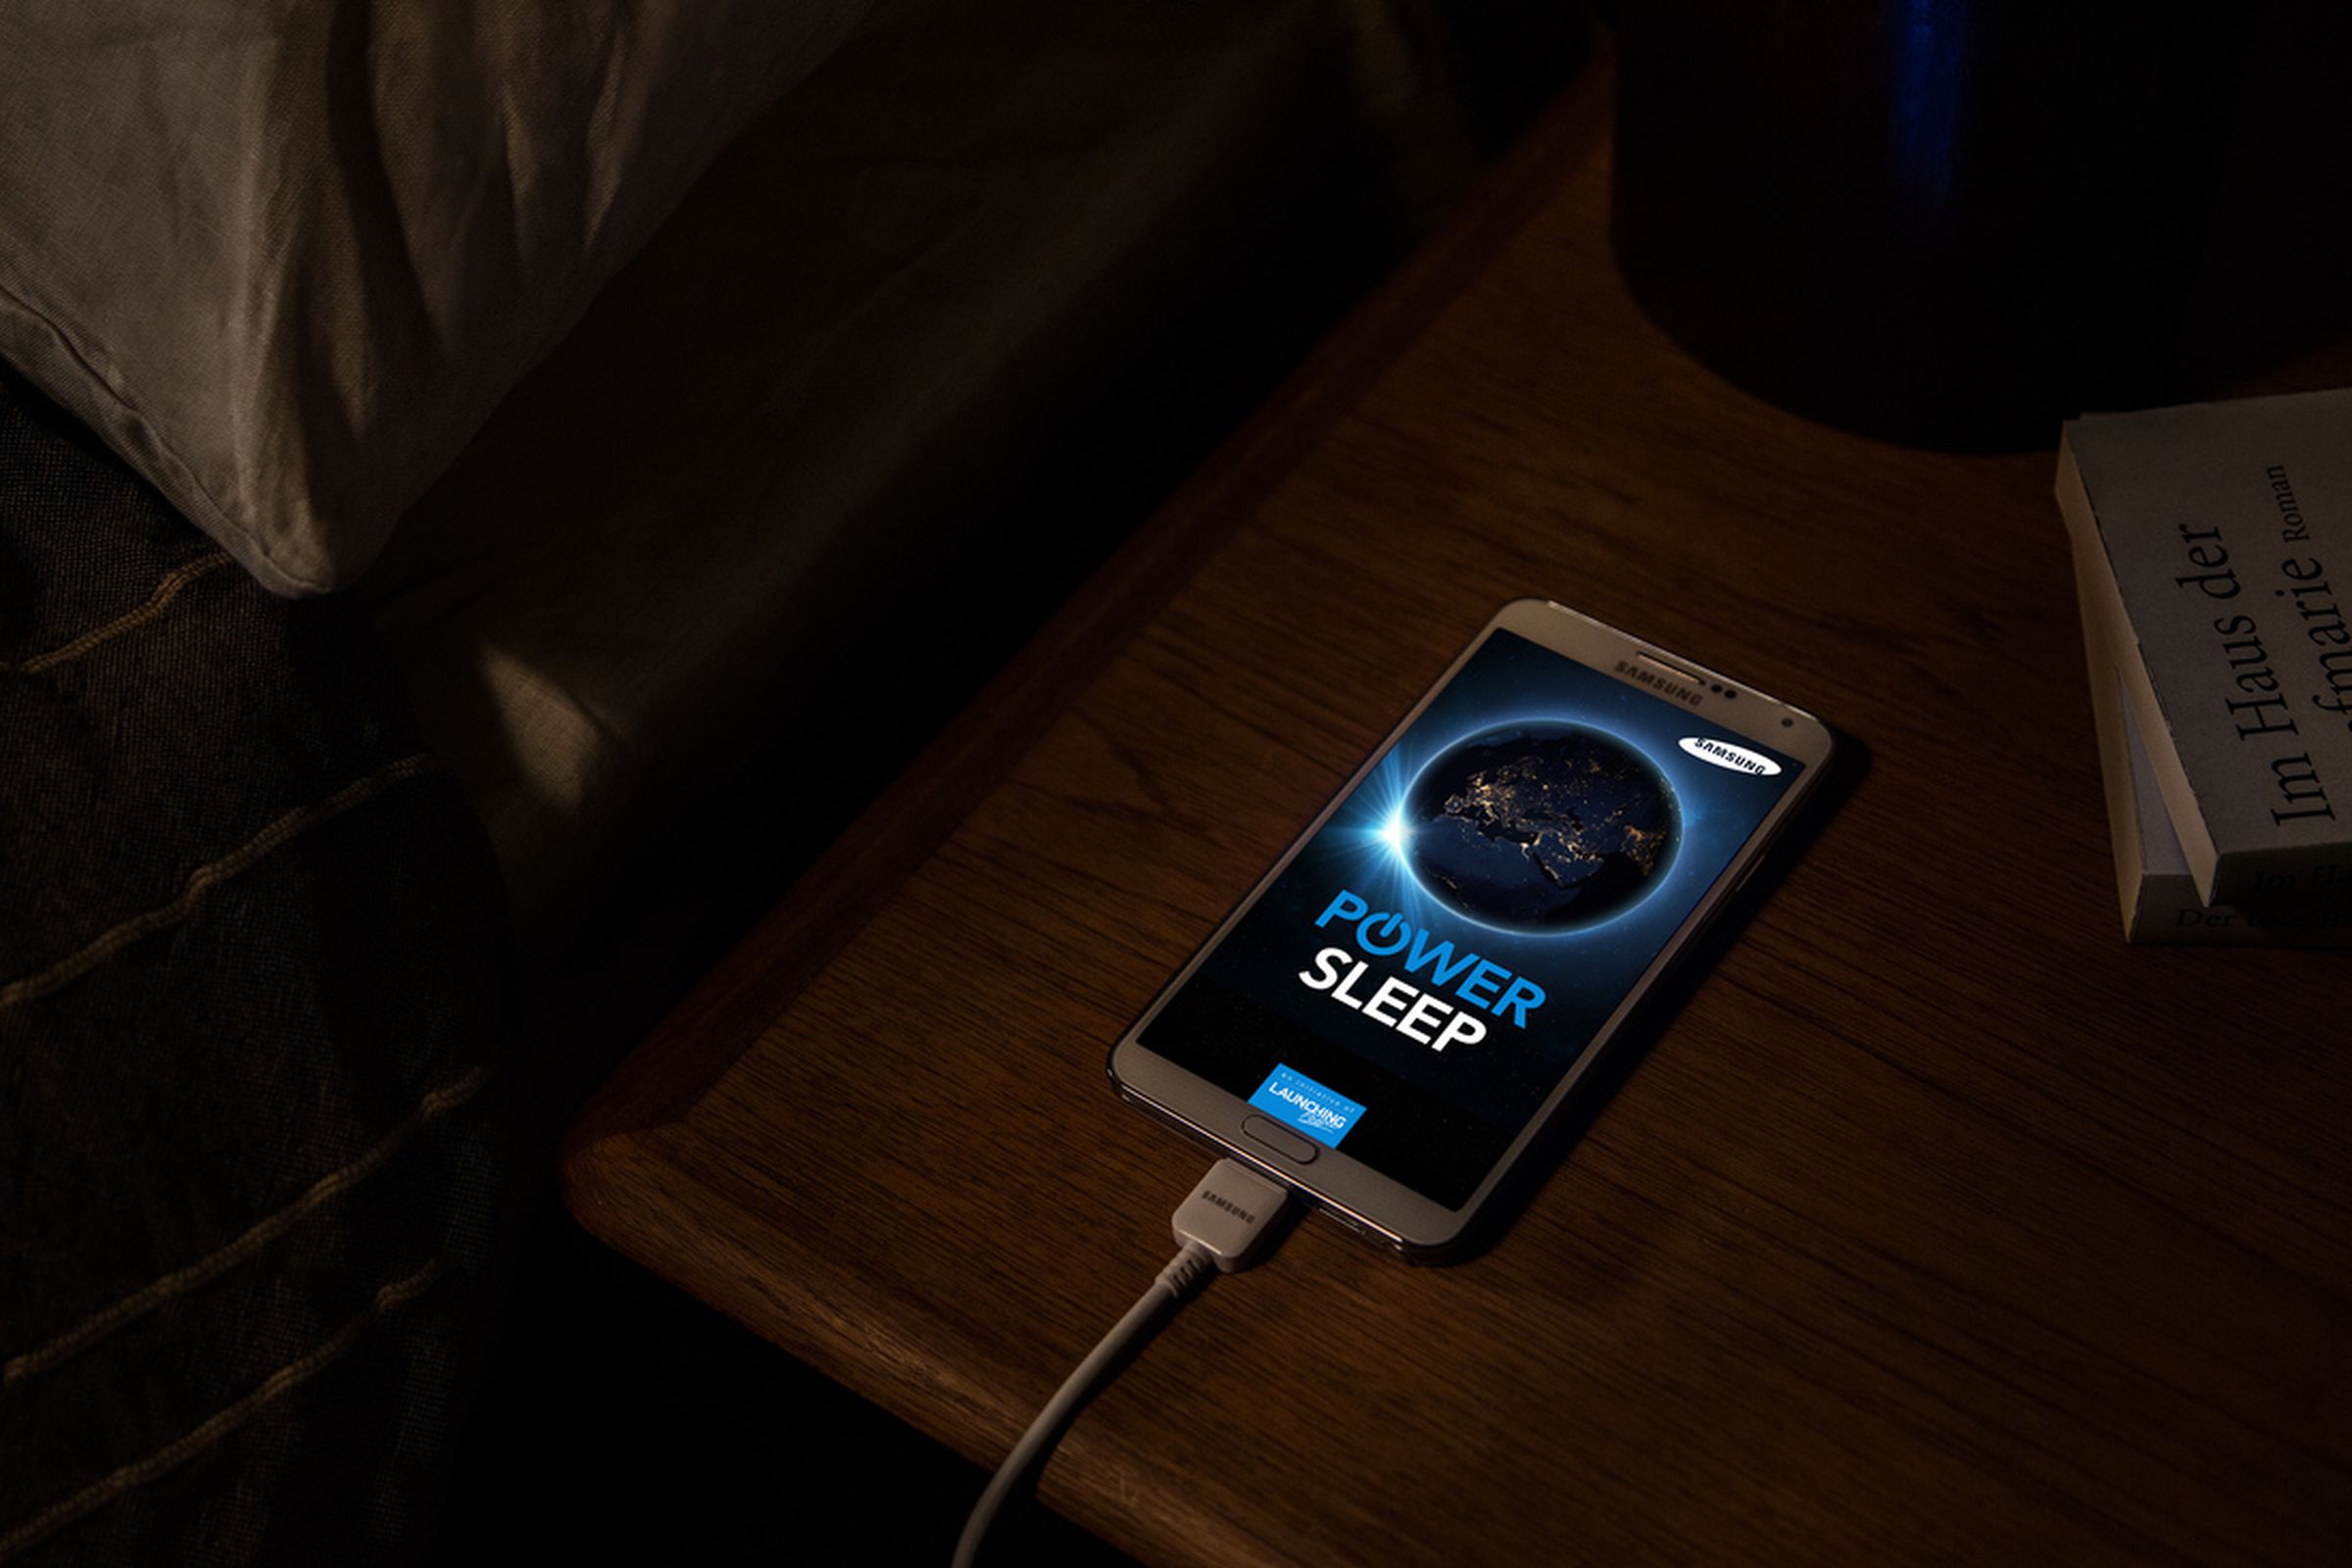 Samsung Power Sleep app